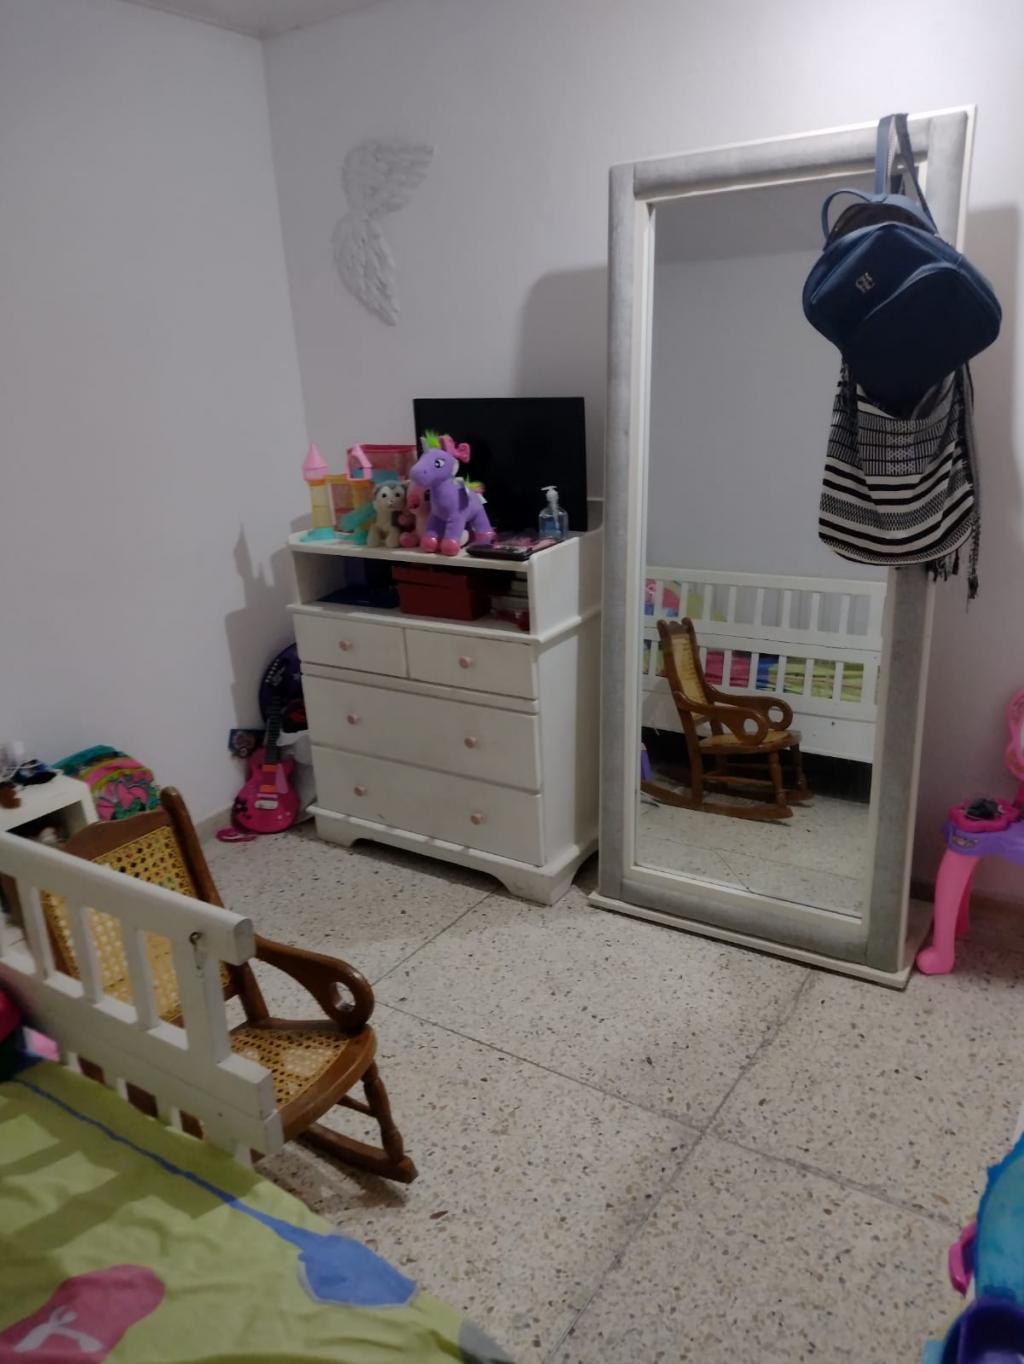 Apartamento en Arriendo por Bienco S.A ubicado en Barranquilla. El código del inmueble es: 7370202 Imágen 13